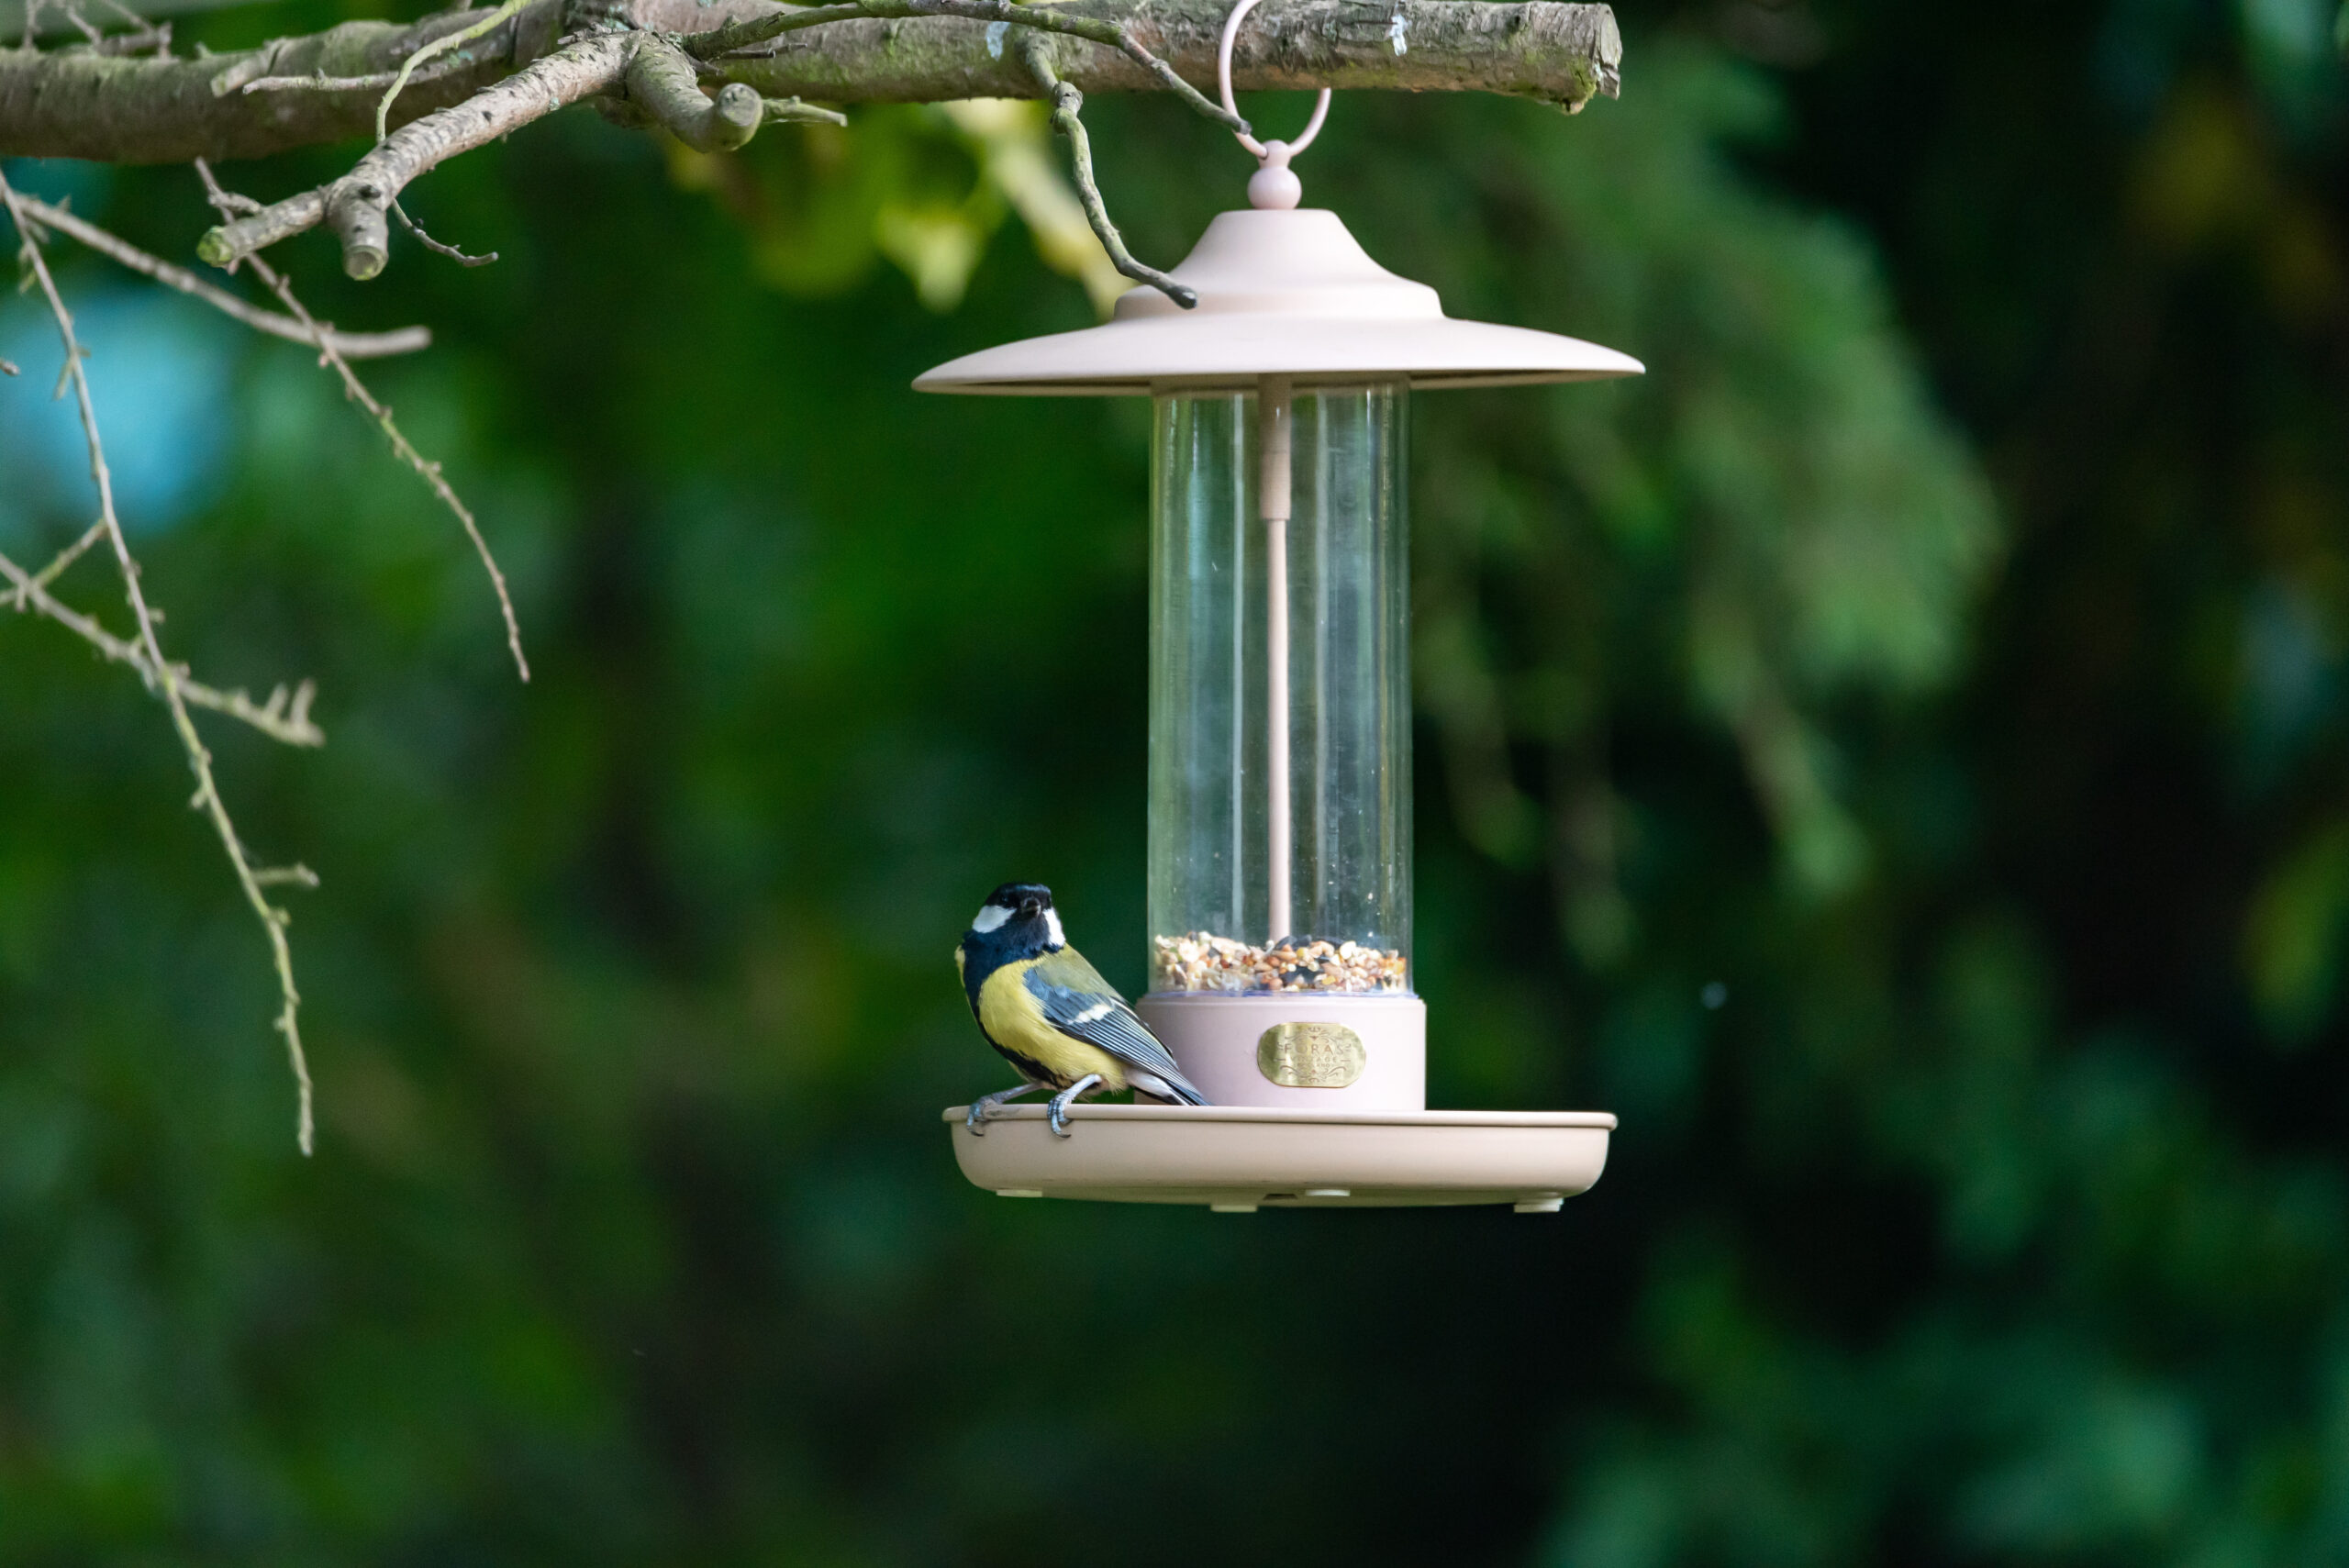 Larch bird feeder and bird